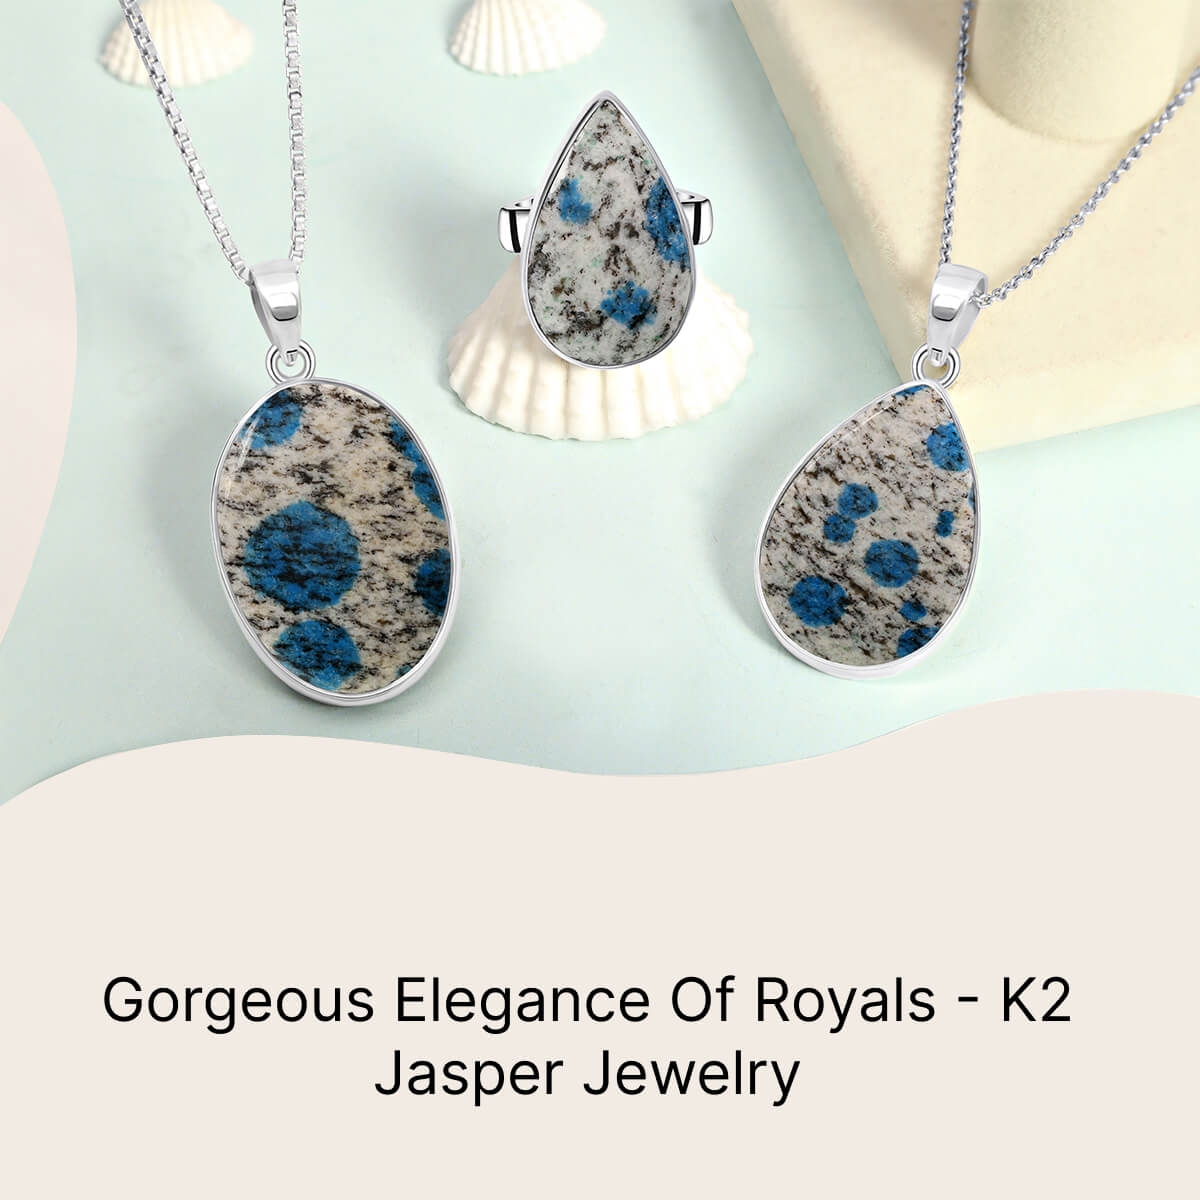 K2 Jasper Jewelry